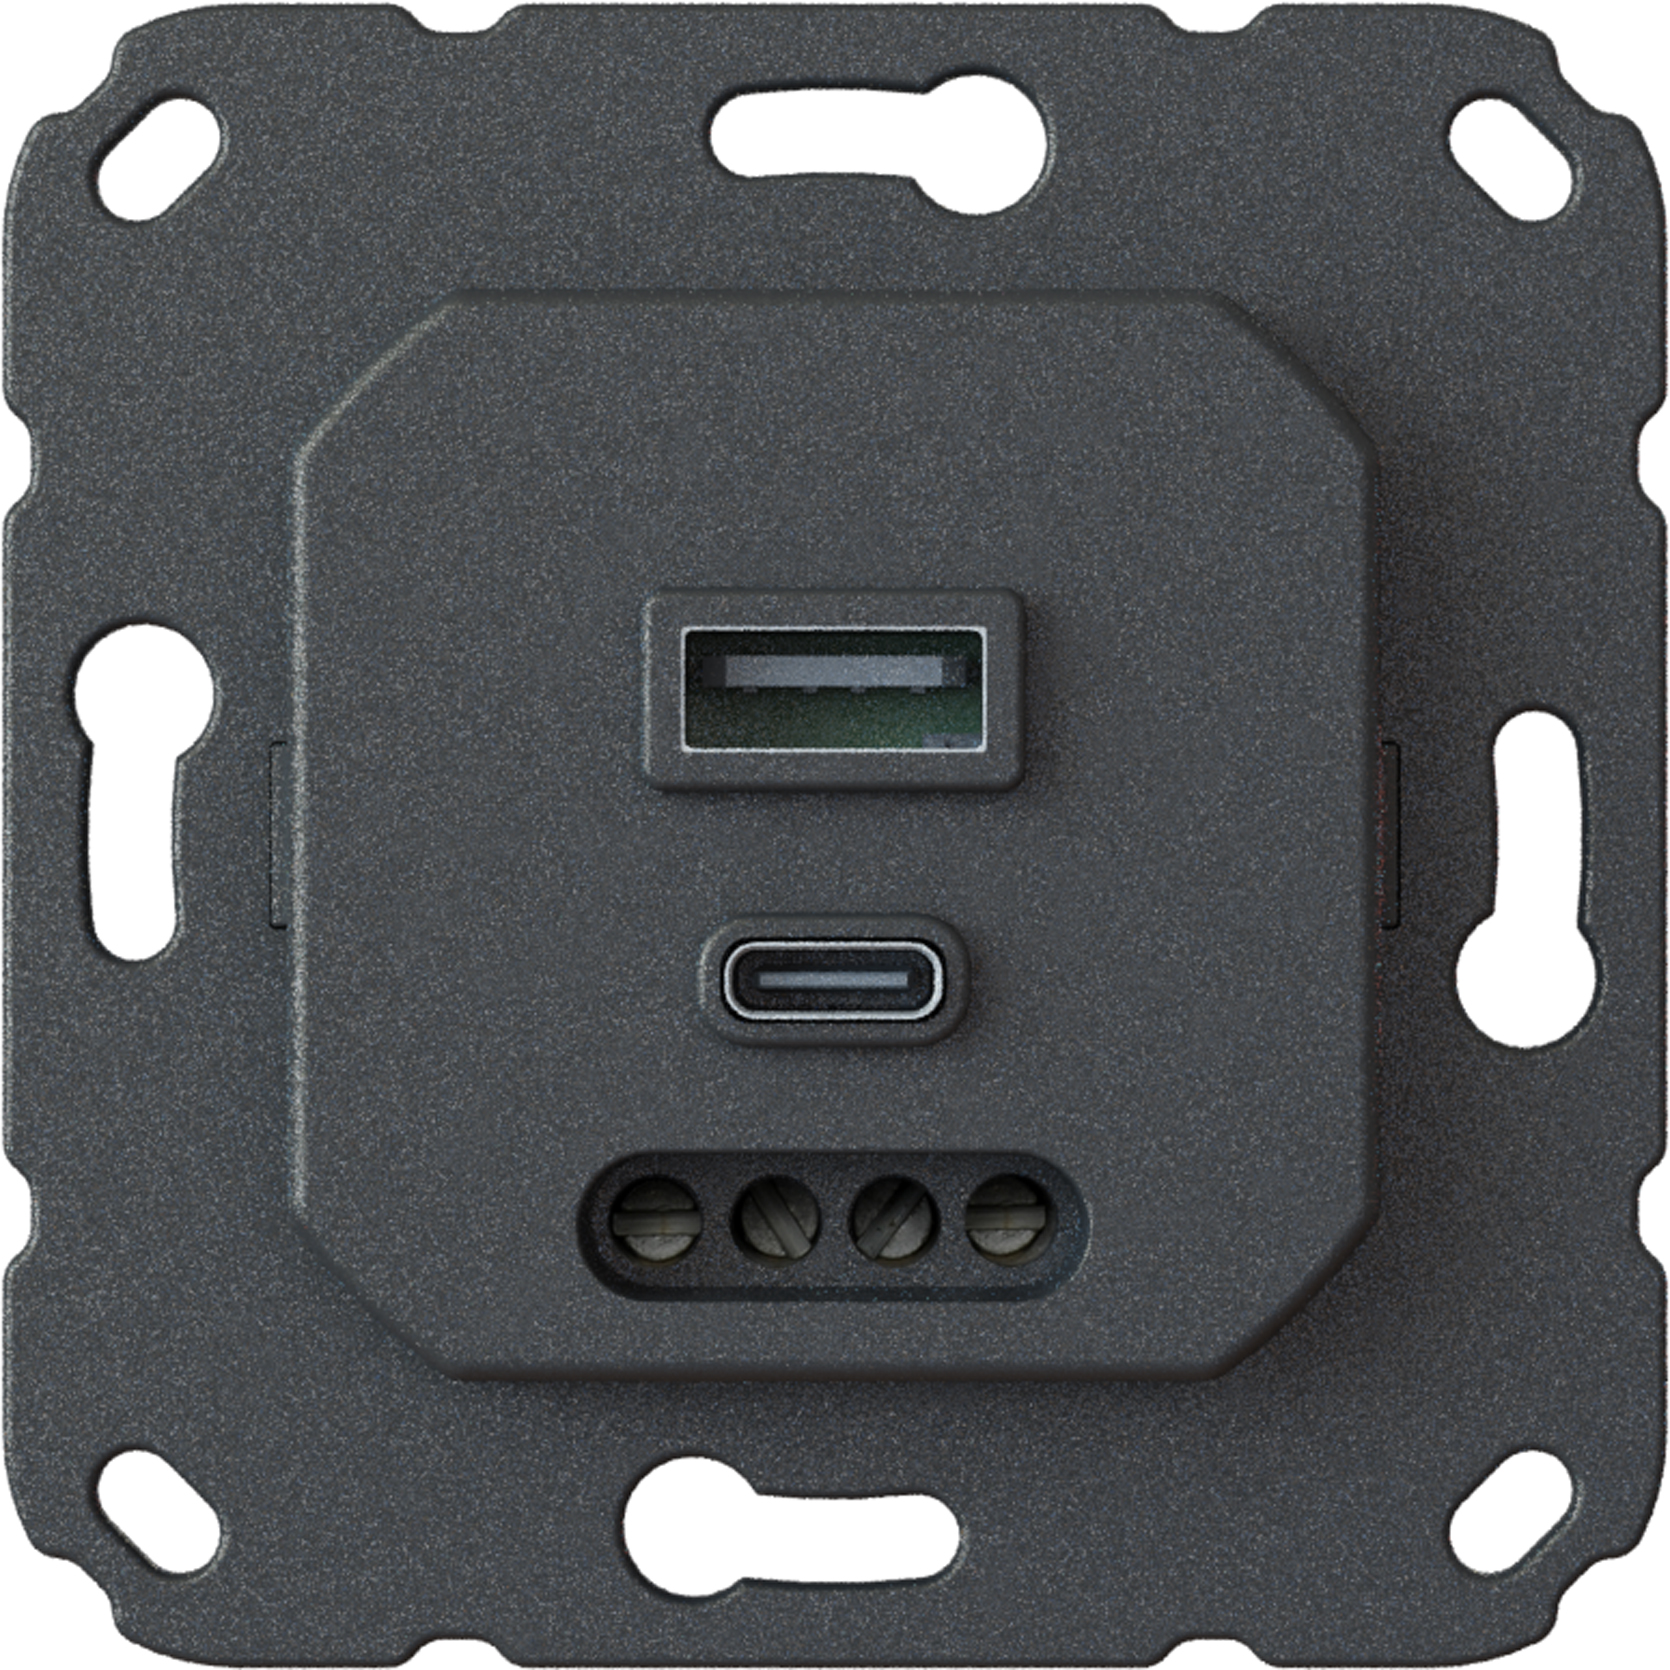 OPUS 55 USB-A/C Steckdose Kombi, Unterputzeinsatz, Power Delivery (PD), Schnellladefunktion, 45 W und 15 W